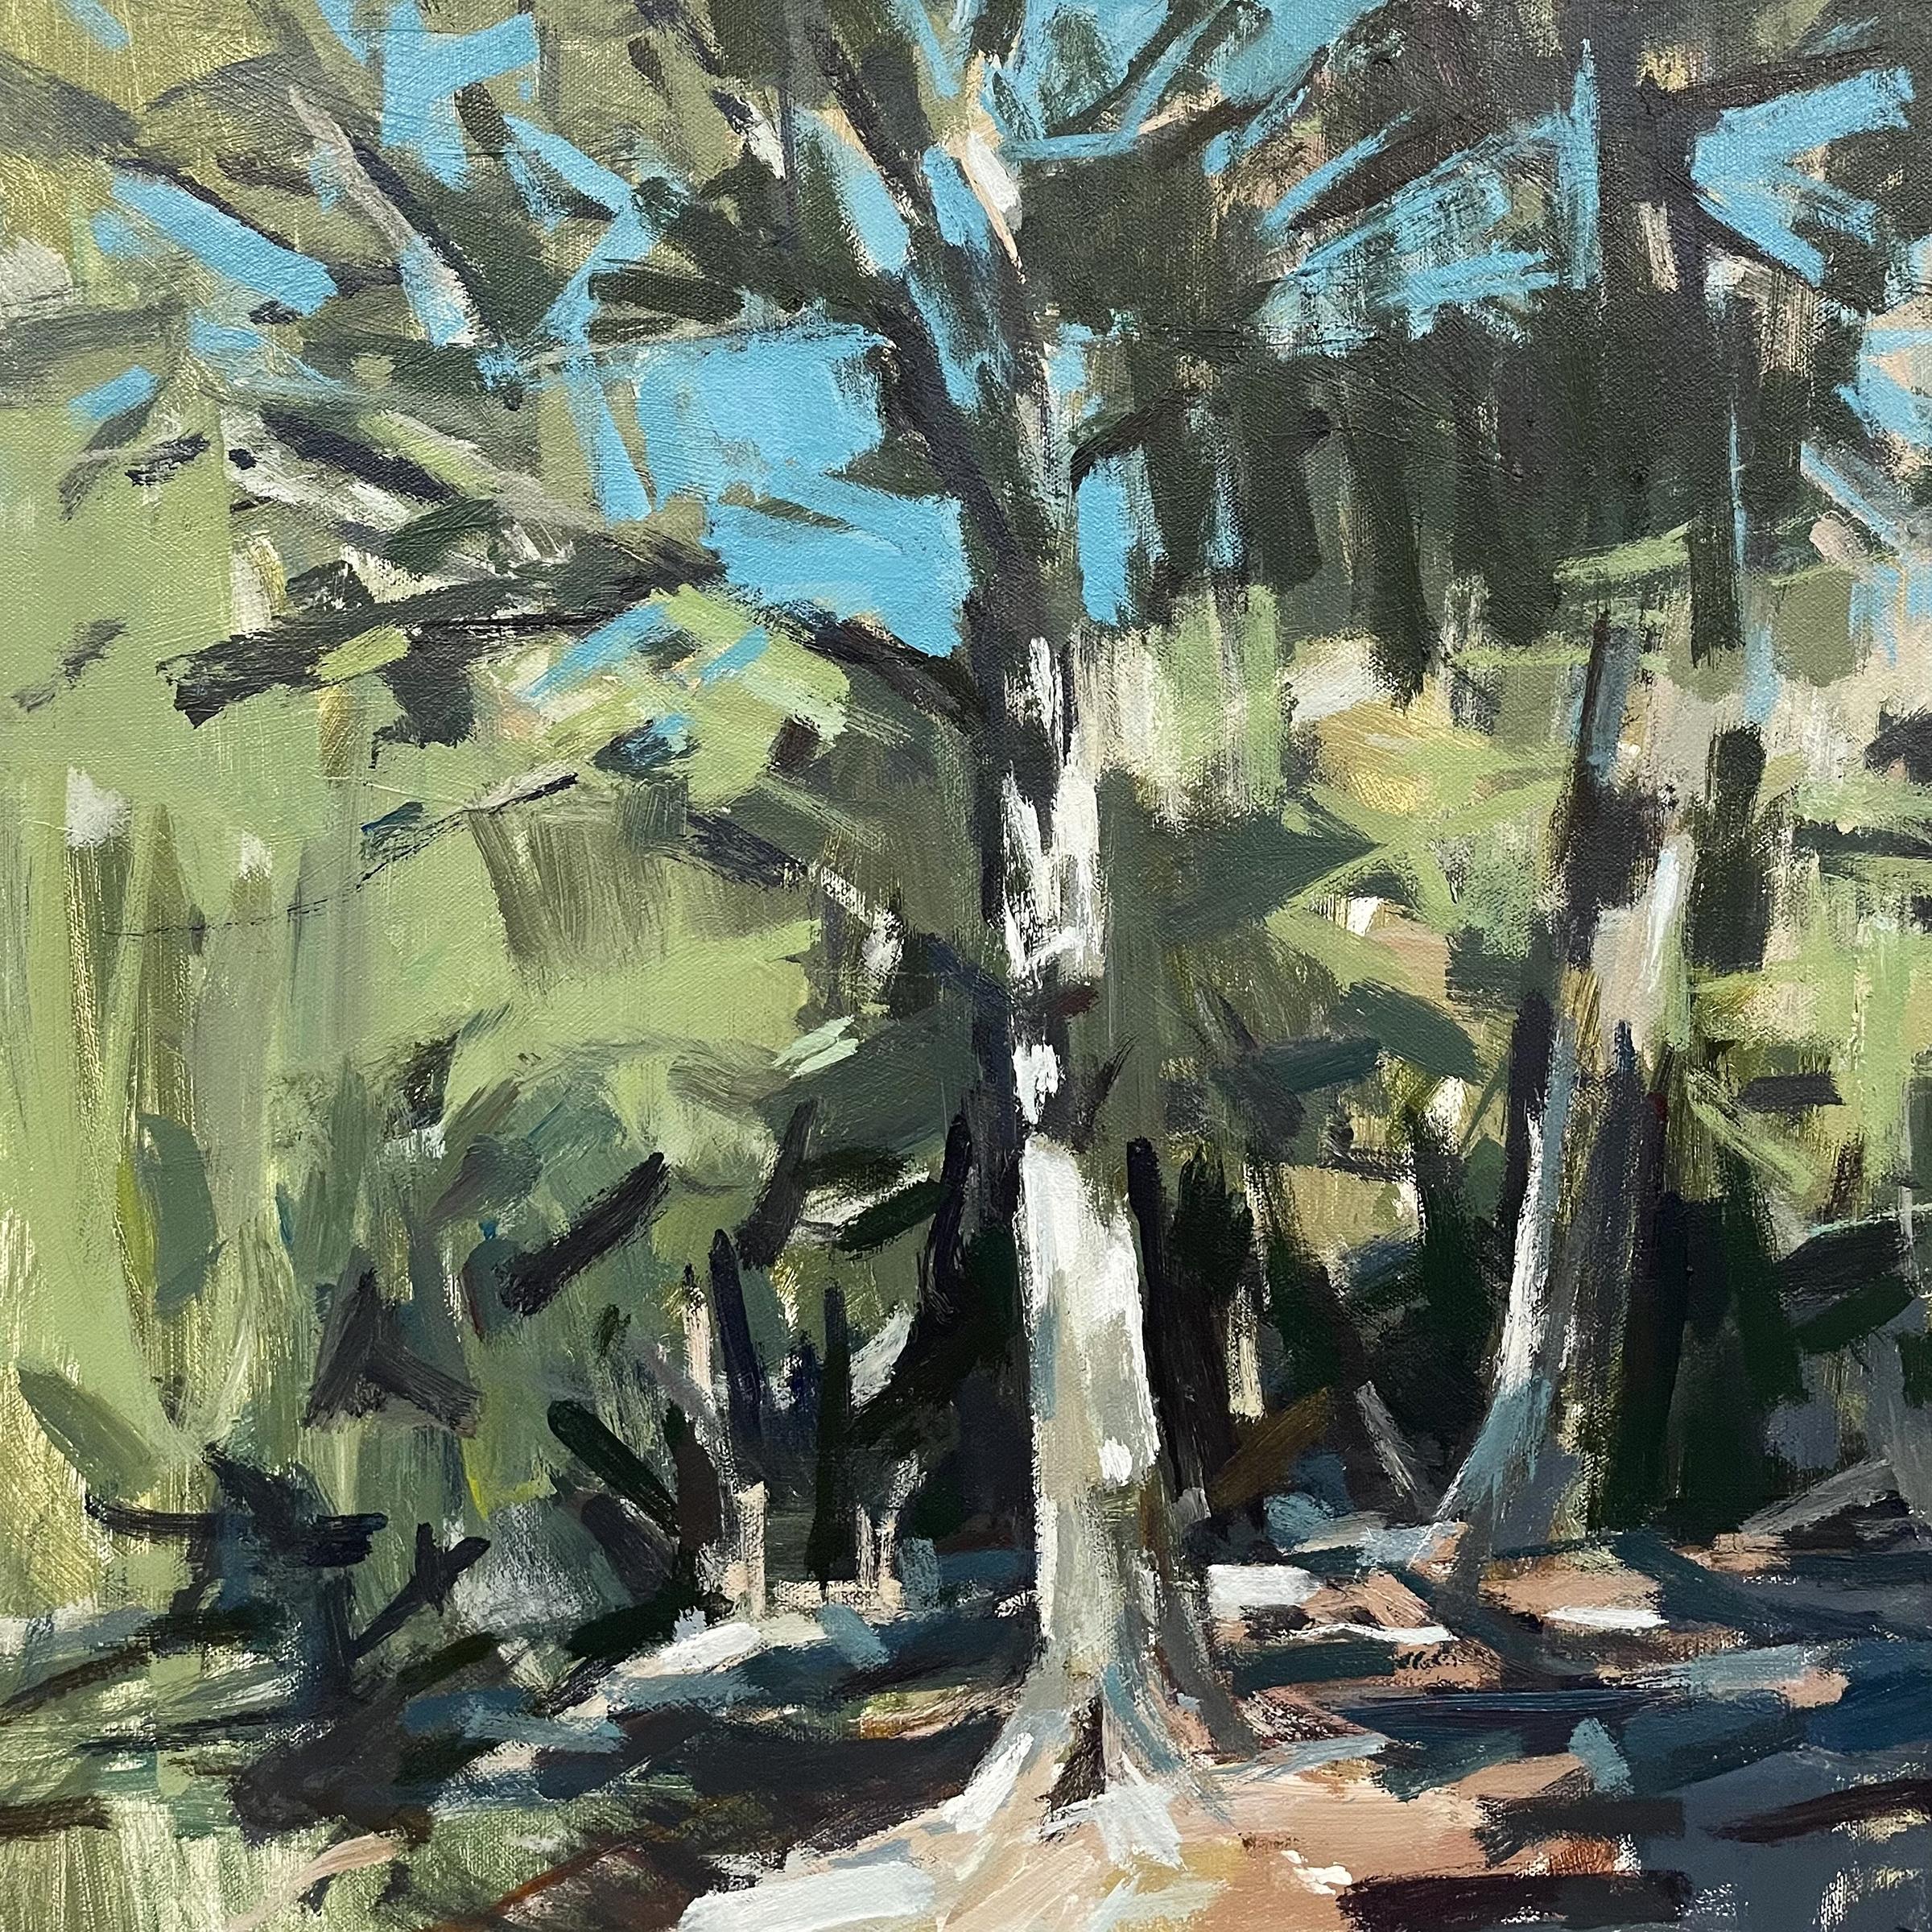 Landscape Painting Scotty Peek - « Deux » - paysages abstraits - peintre - impressionnisme contemporain